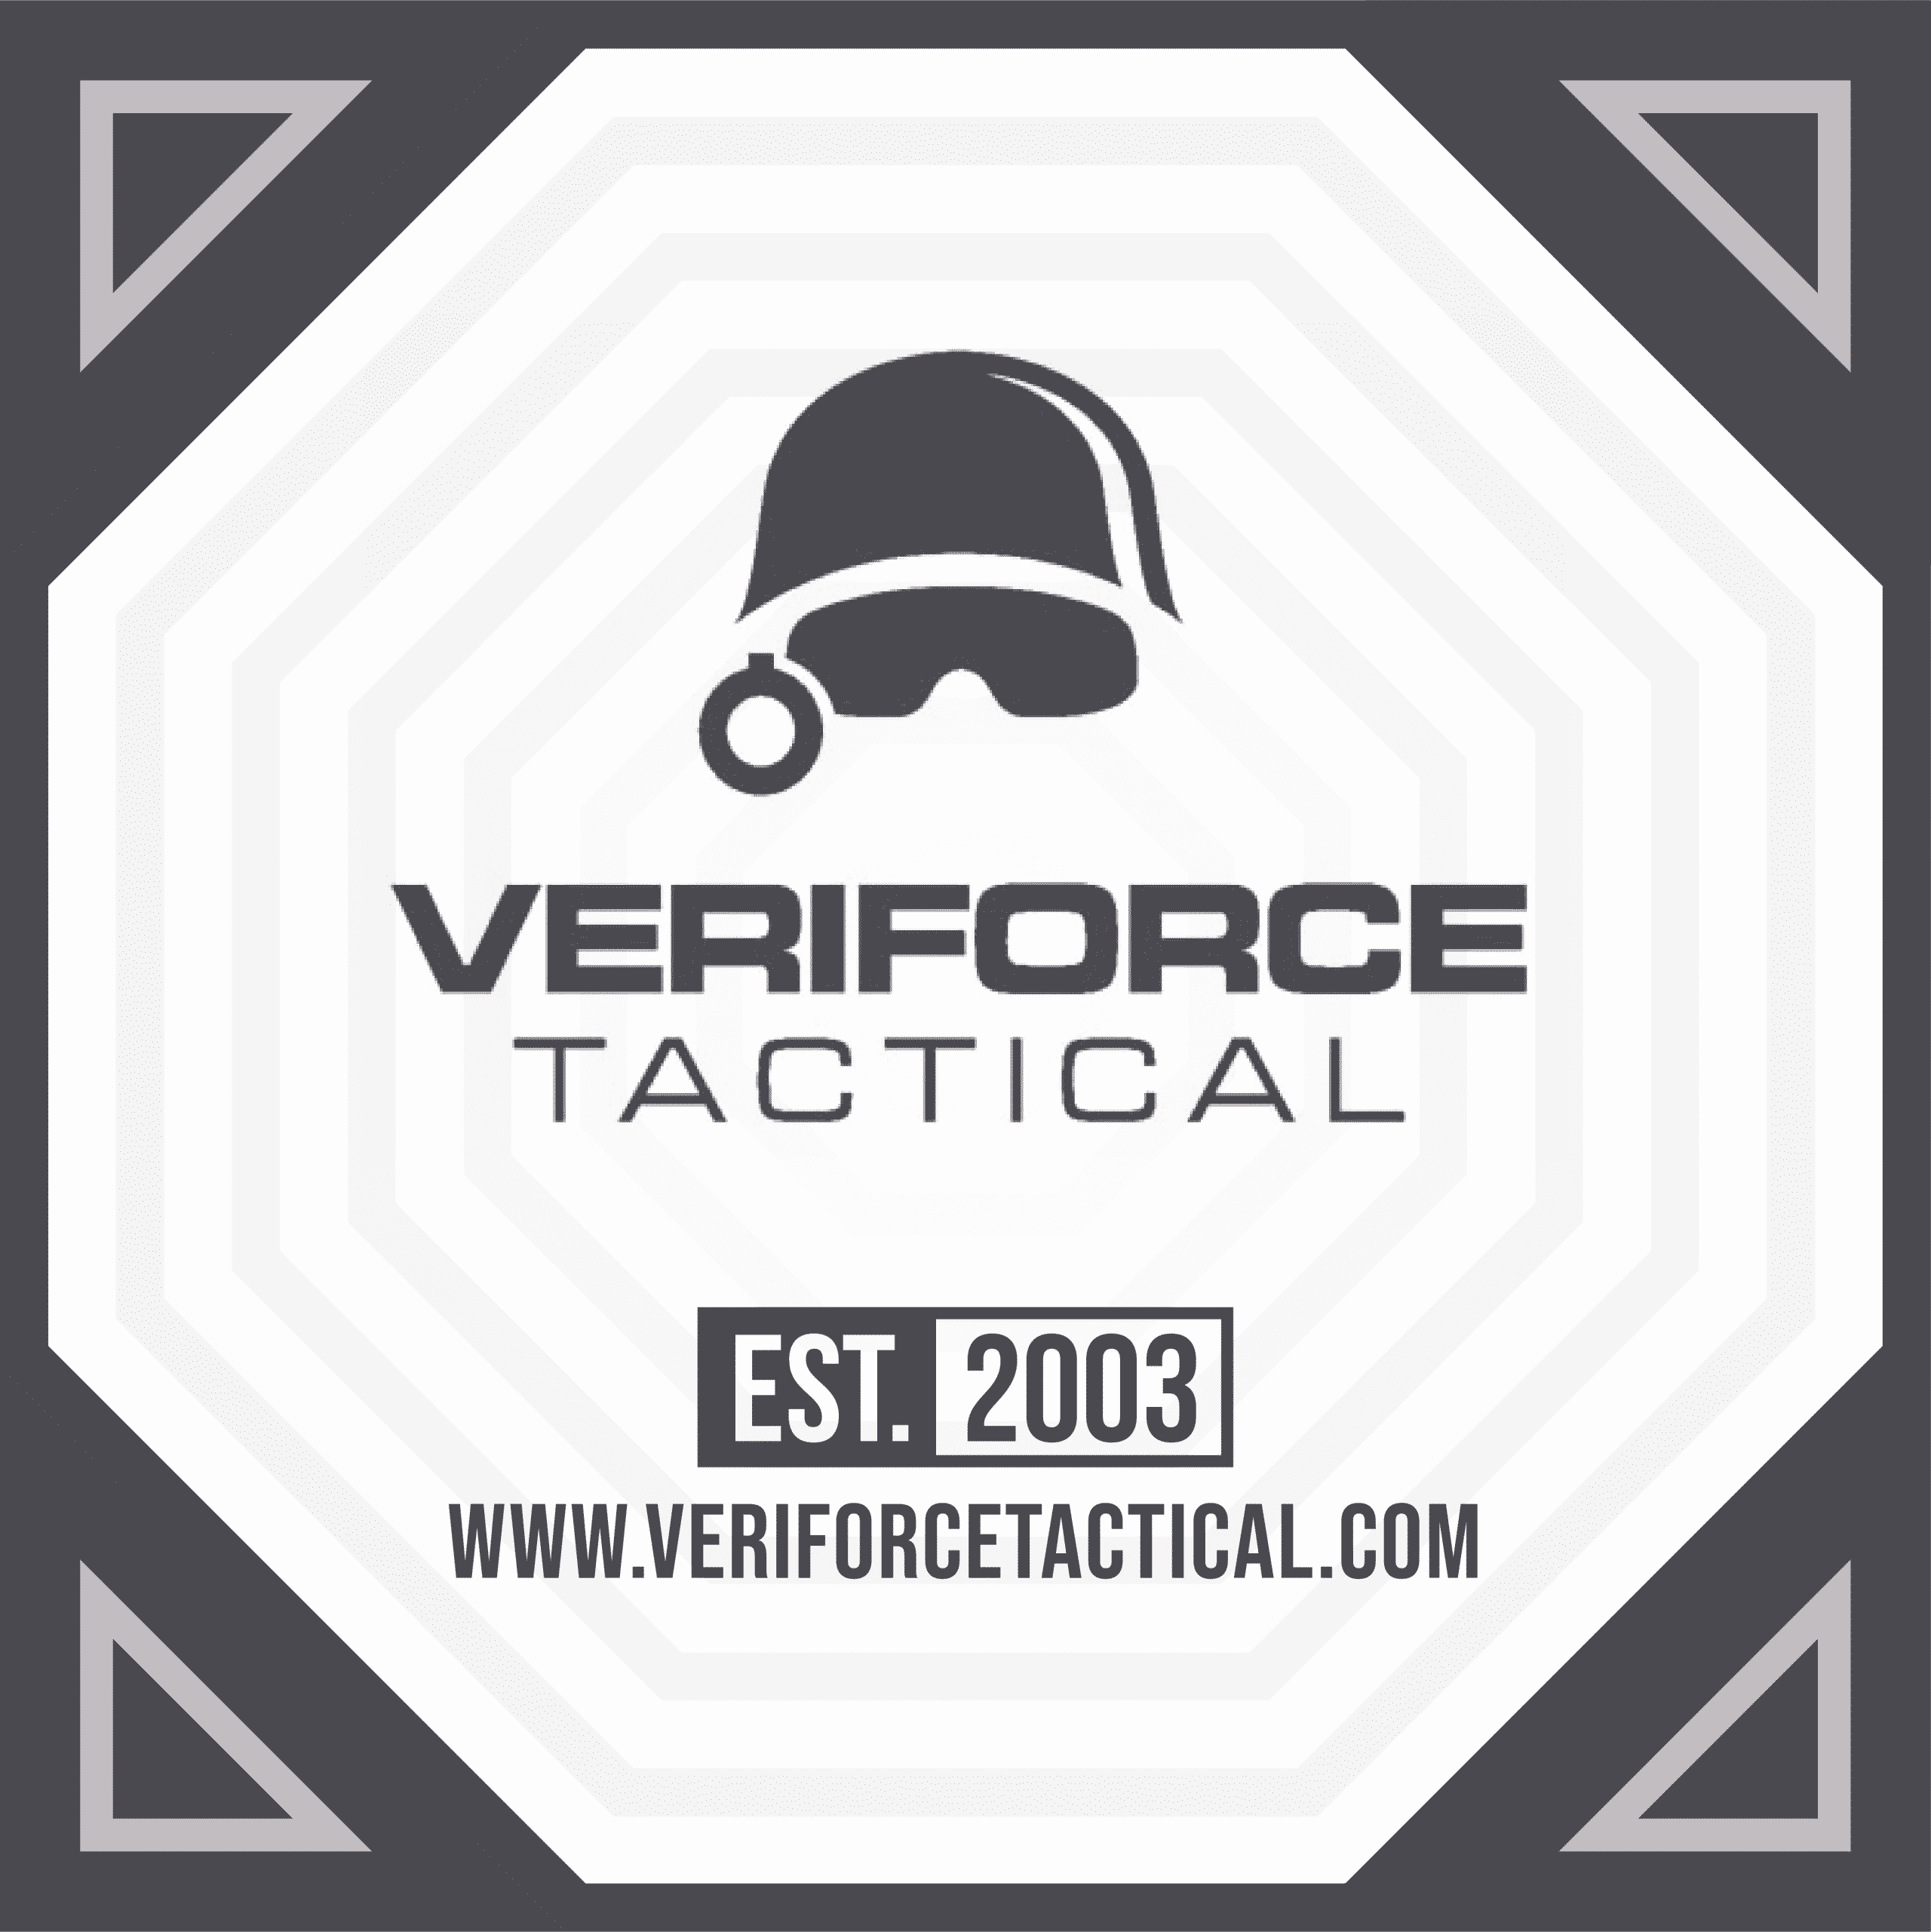 veriforcetactical.com